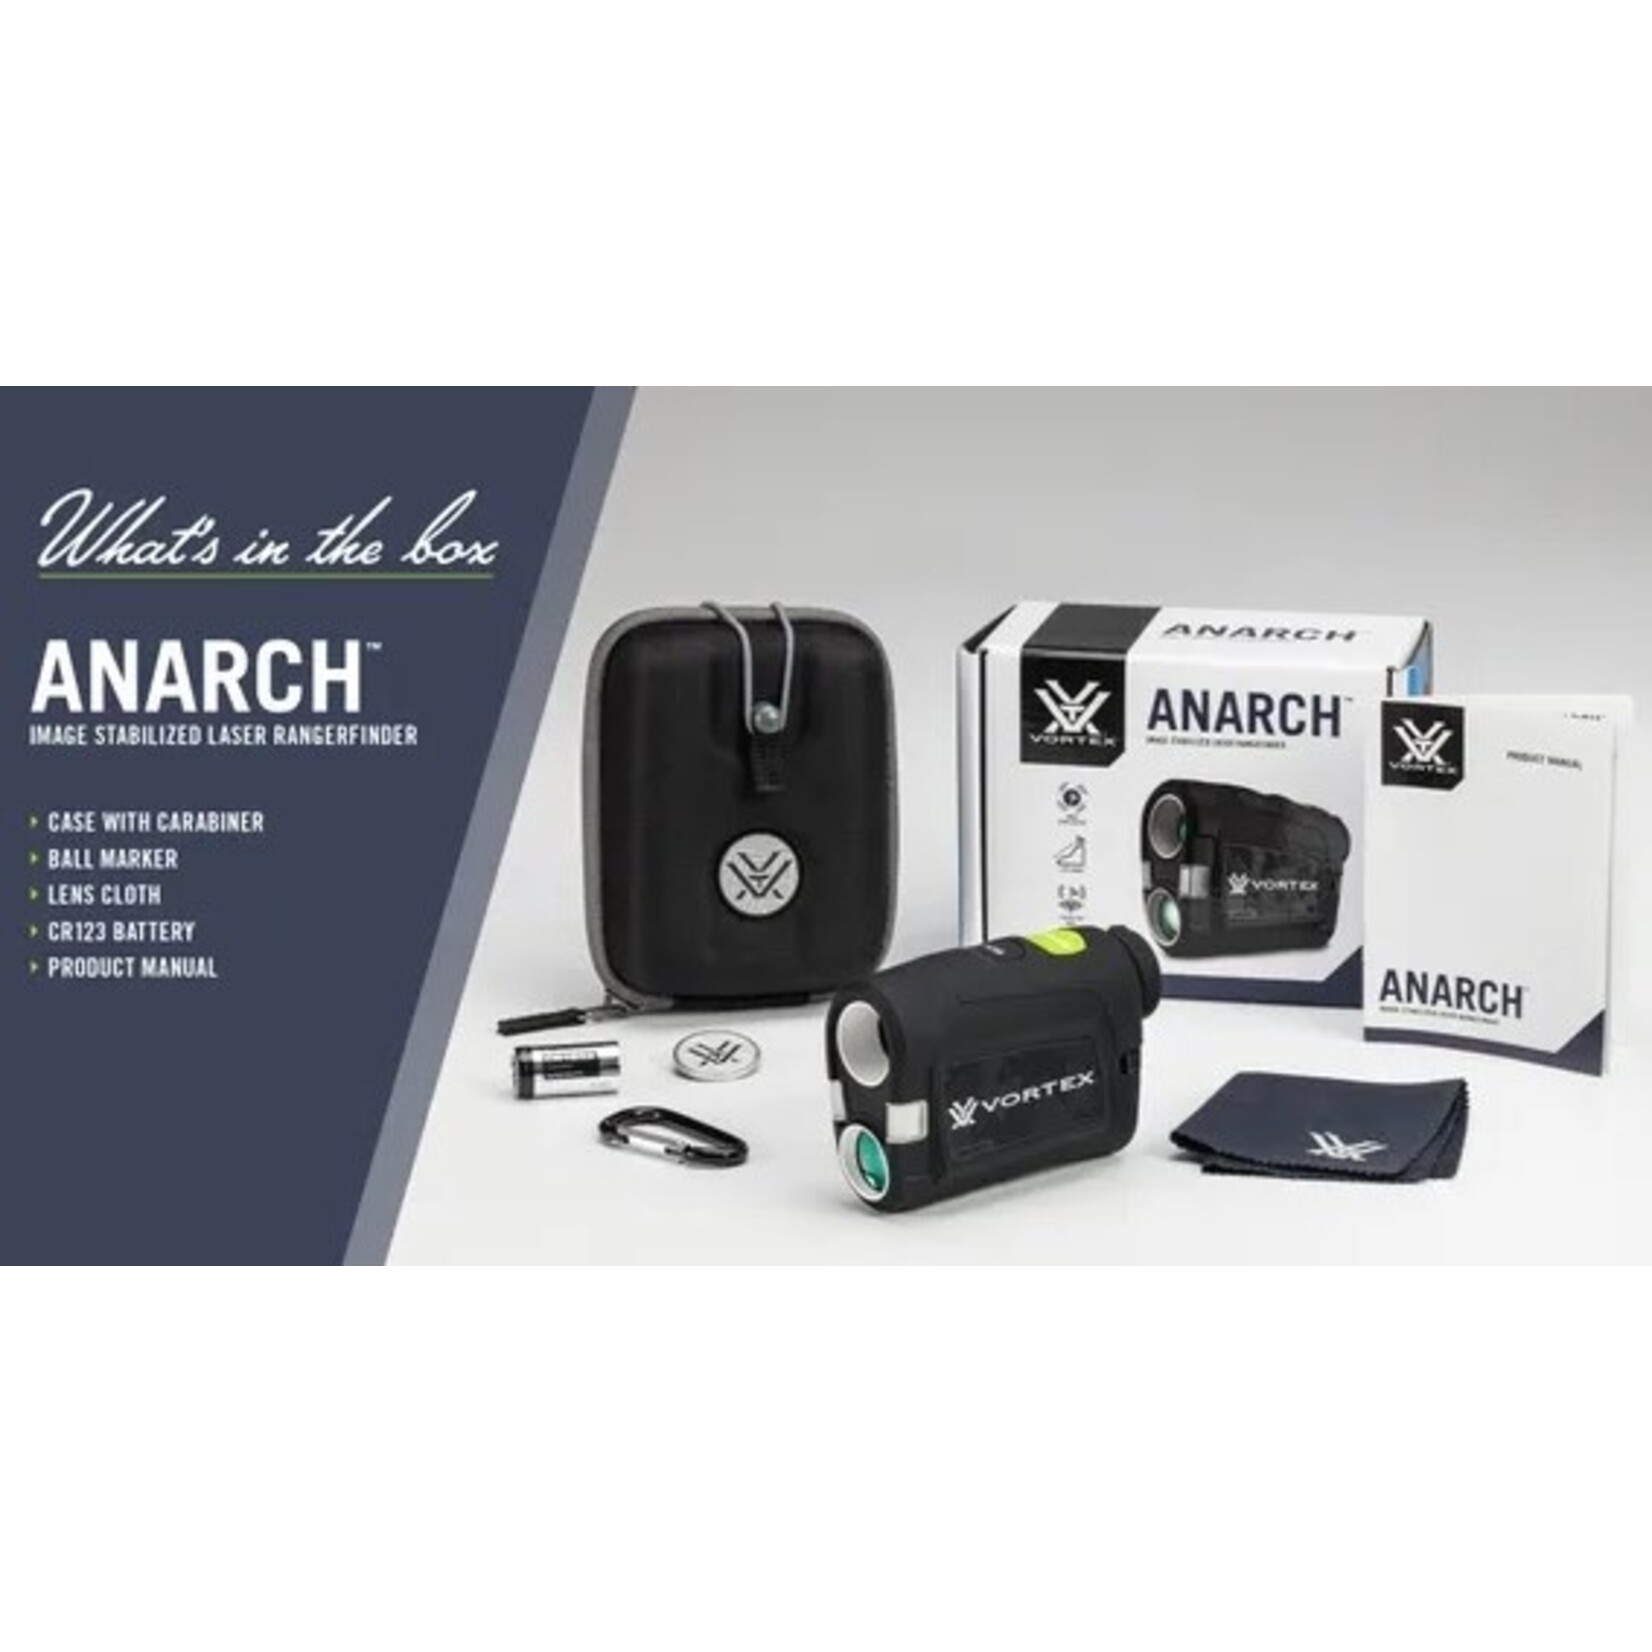 Anarch™ Image Stablized Golf Laser Rangefinder